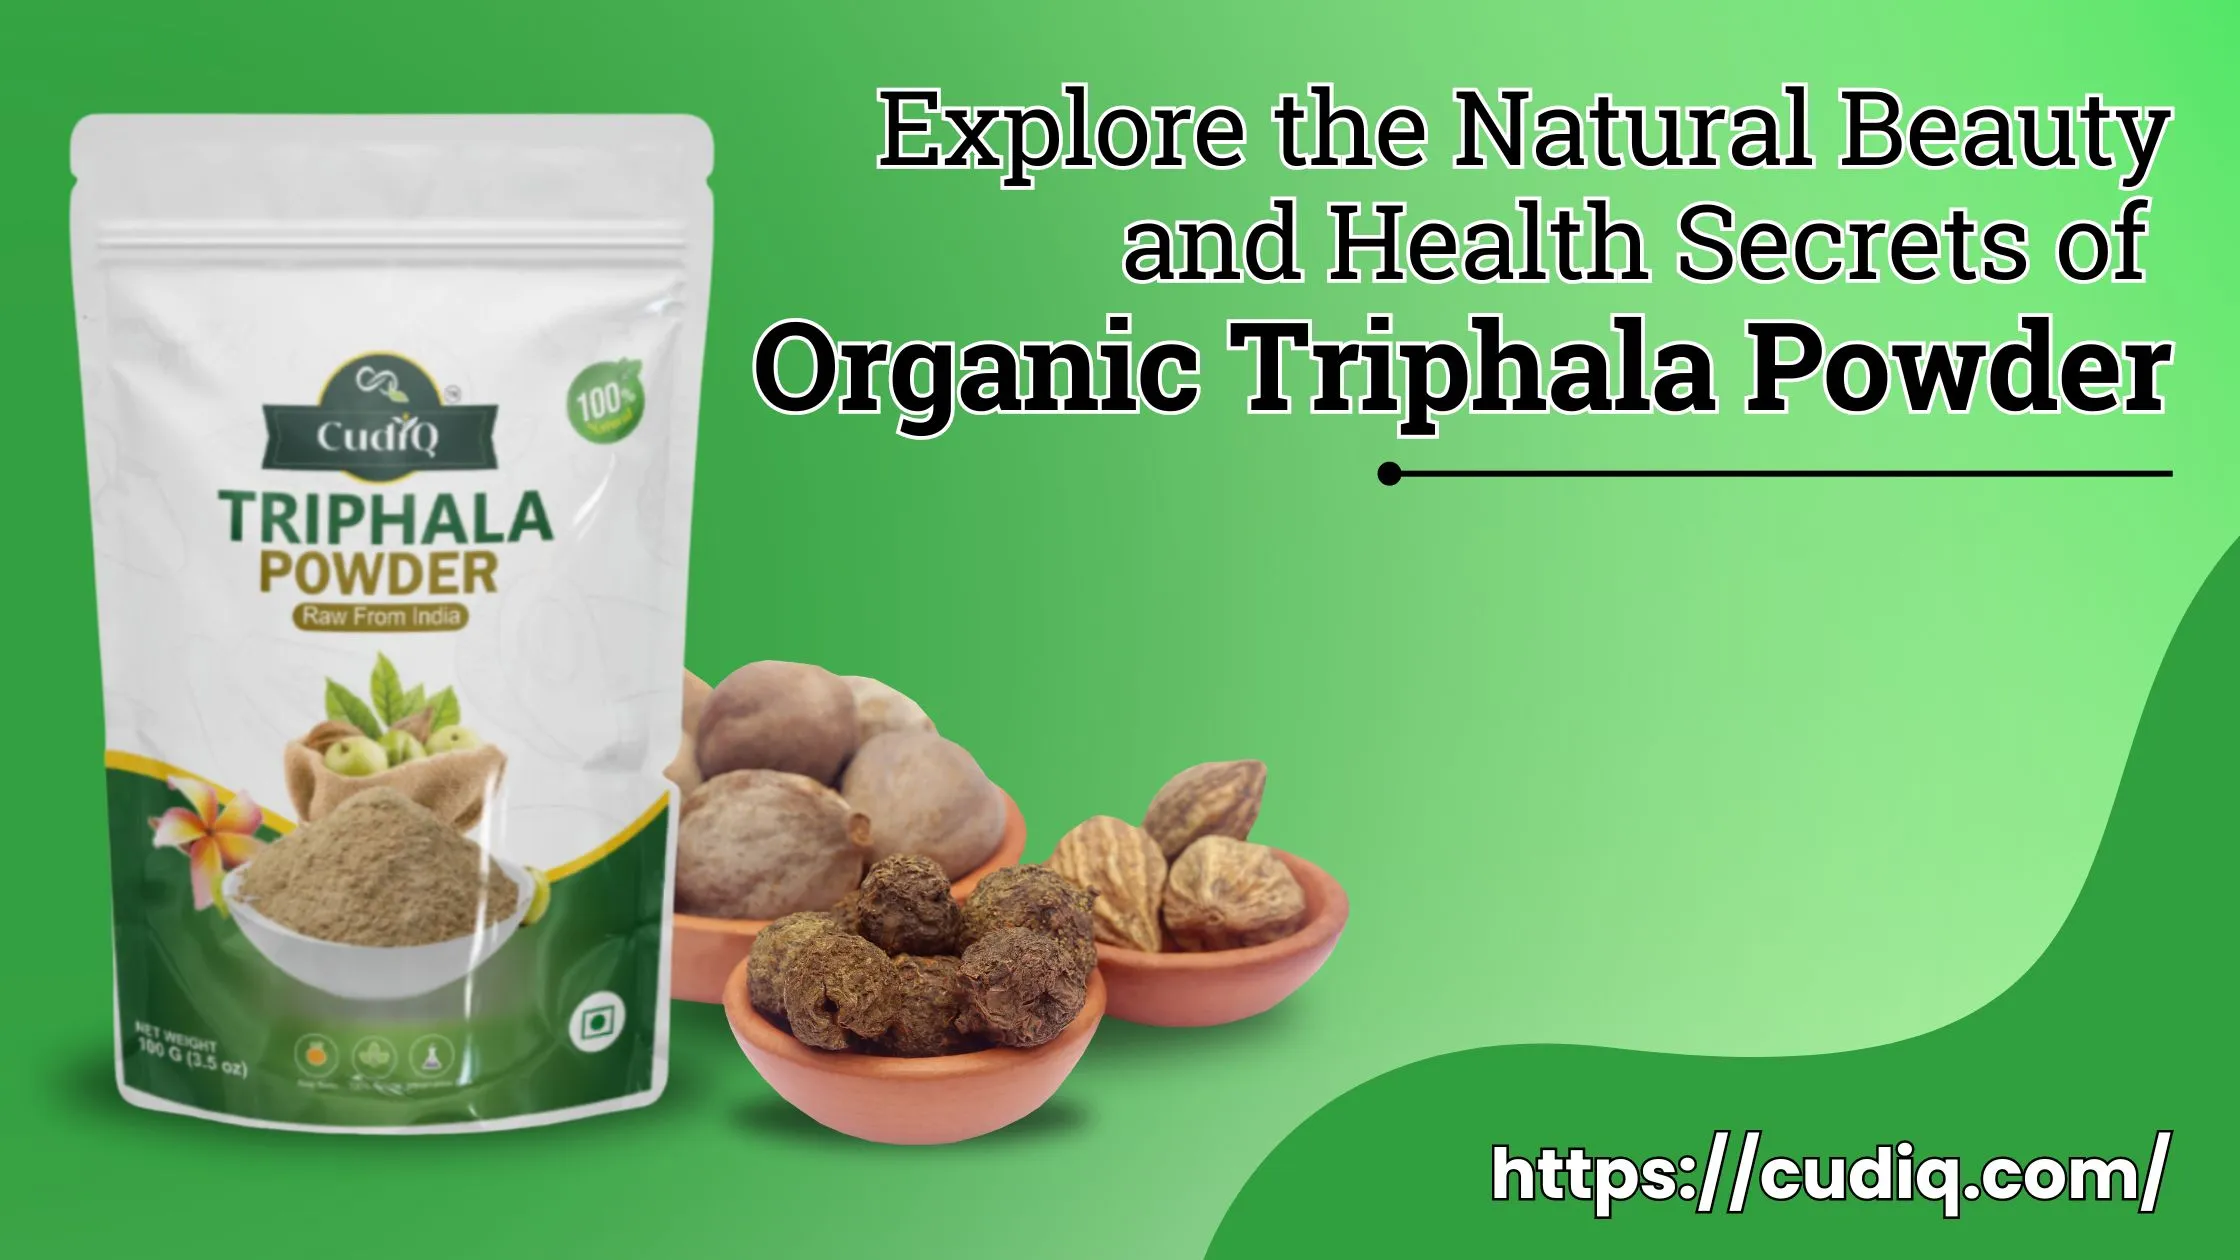 Organic Triphala Powder